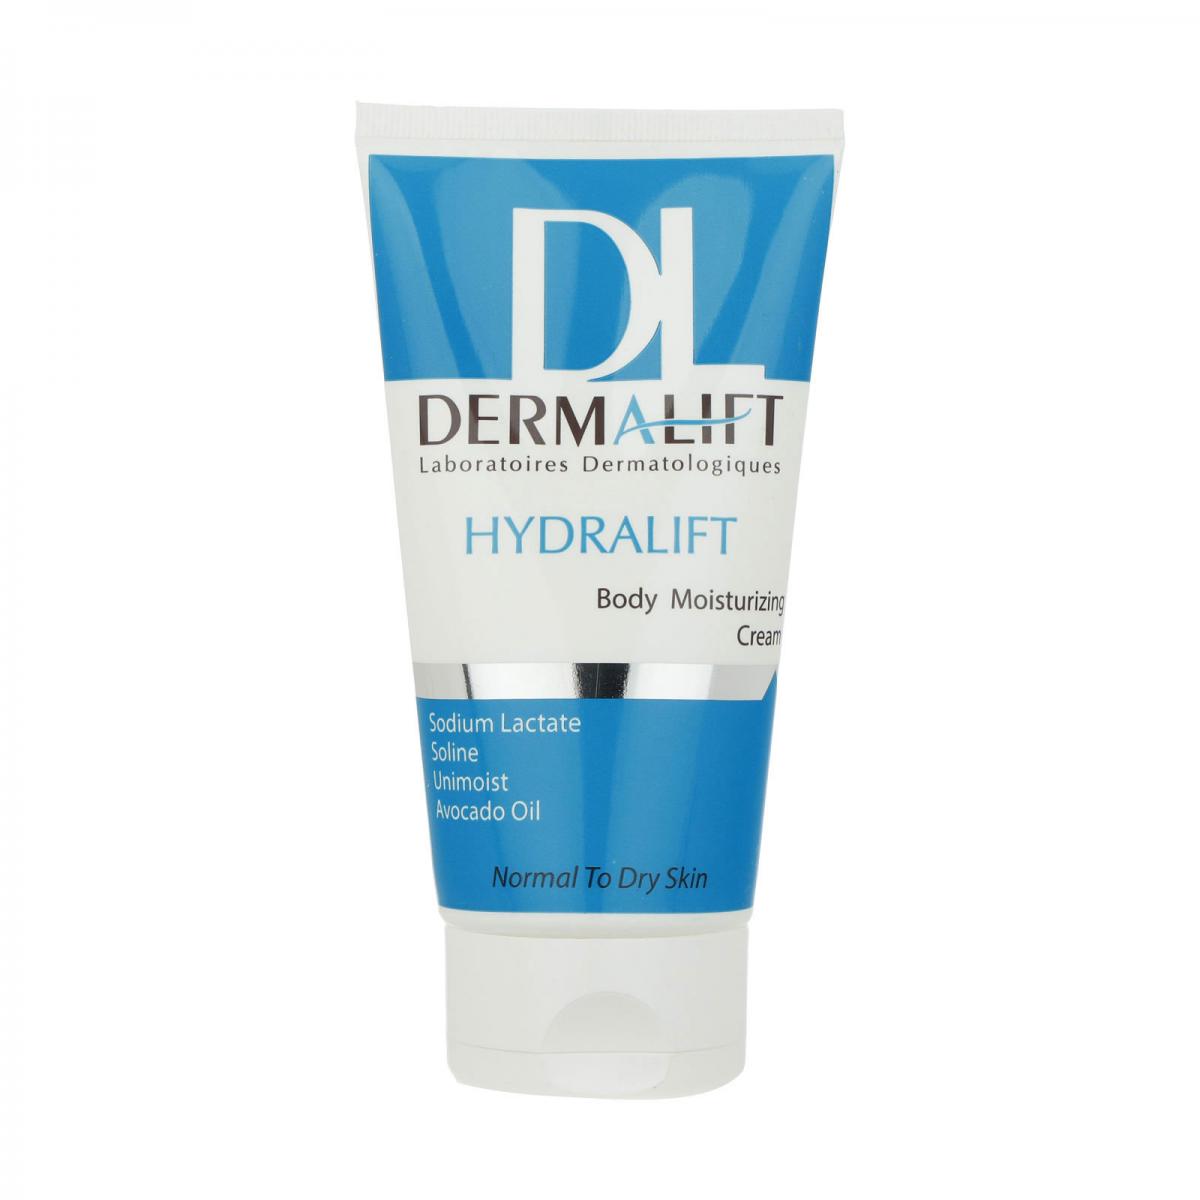 کرم مرطوب کننده بدن هیدرالیفت -  Dermalift Hydralift Body Moisturizing Cream For Normal And Dry Skins 150 ml 